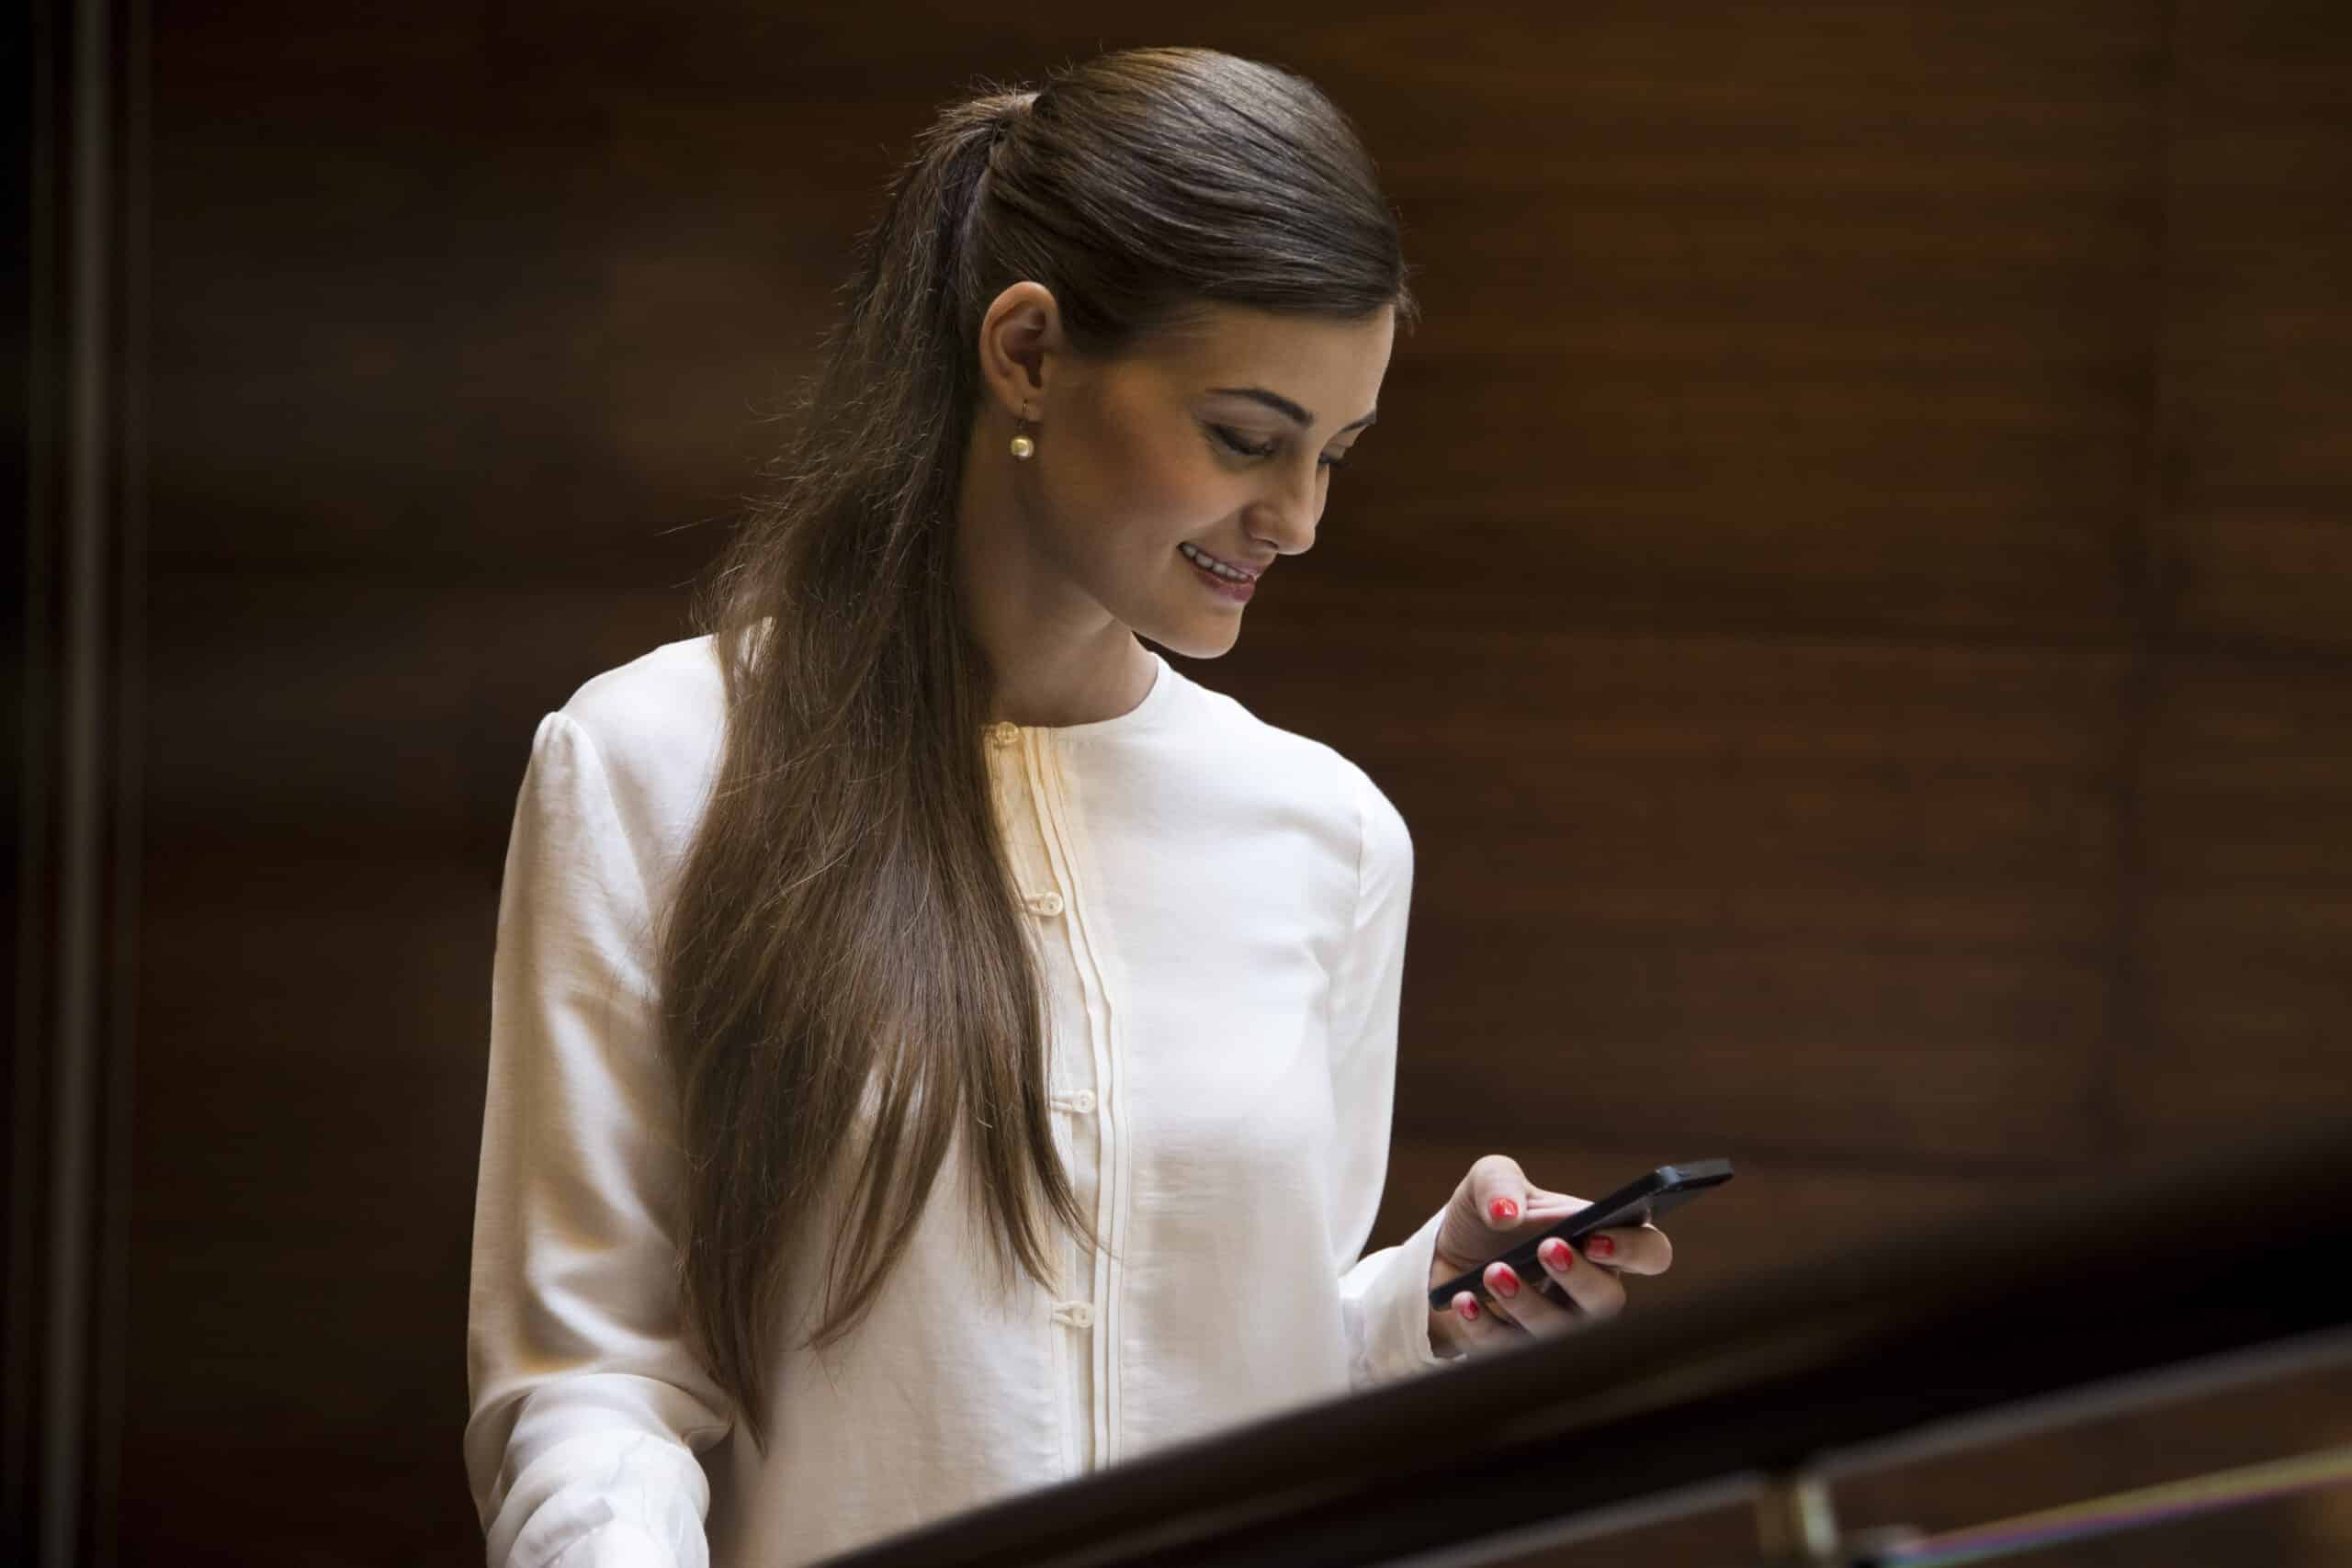 Eine Frau in einer weißen Bluse lächelt, während sie auf ihr Smartphone schaut und in einem Raum mit holzgetäfelten Wänden steht. © Fotografie Tomas Rodriguez